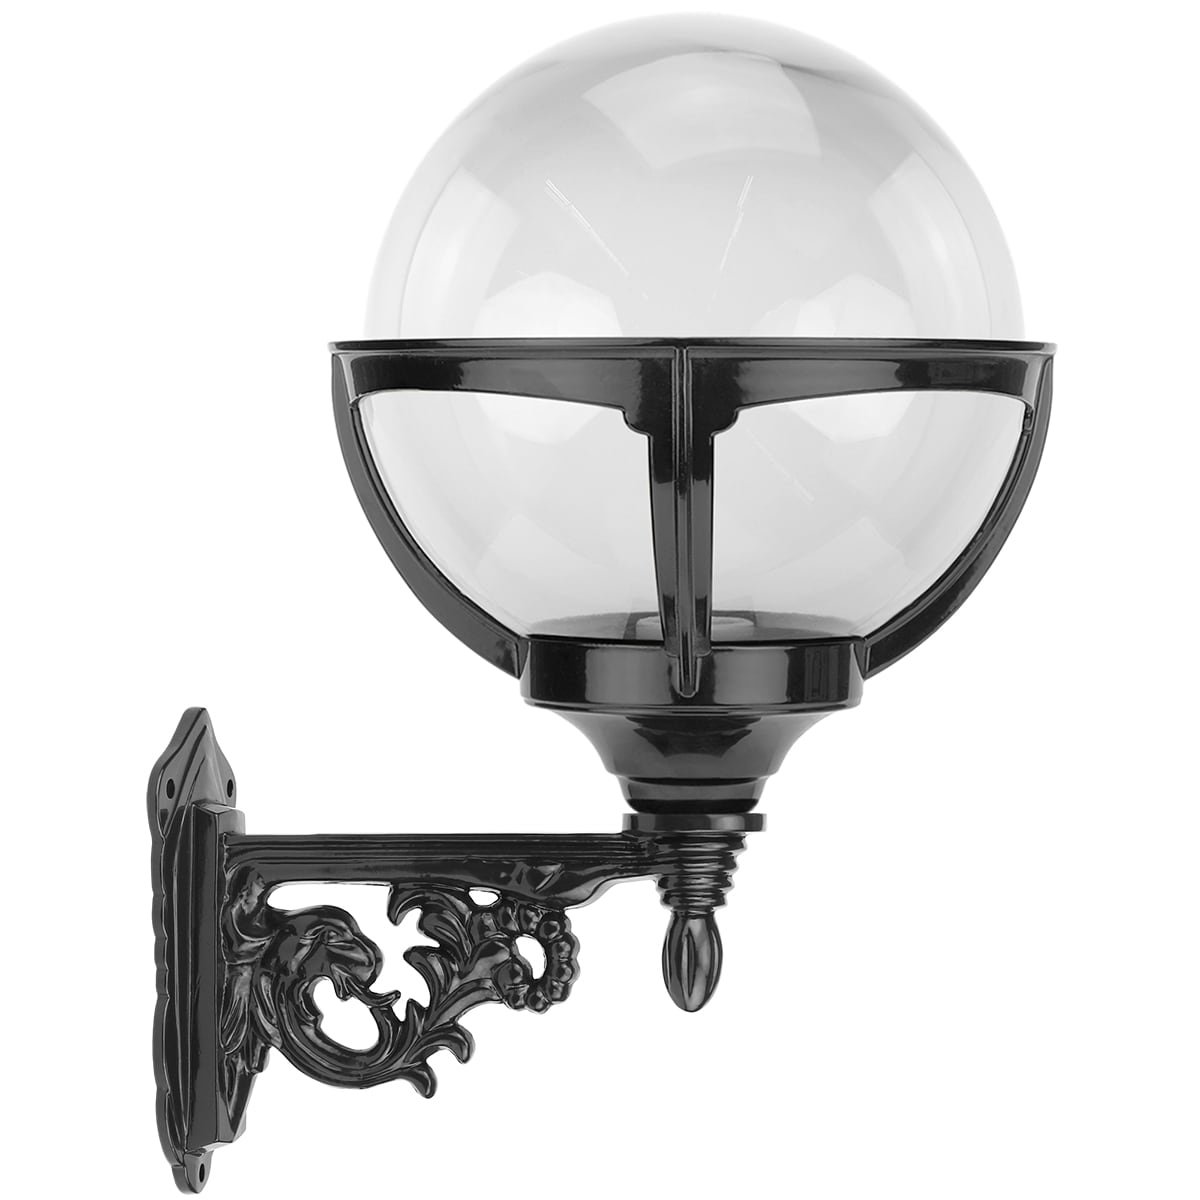 Sphere lamp clear globe Hoogwoud - 45 cm